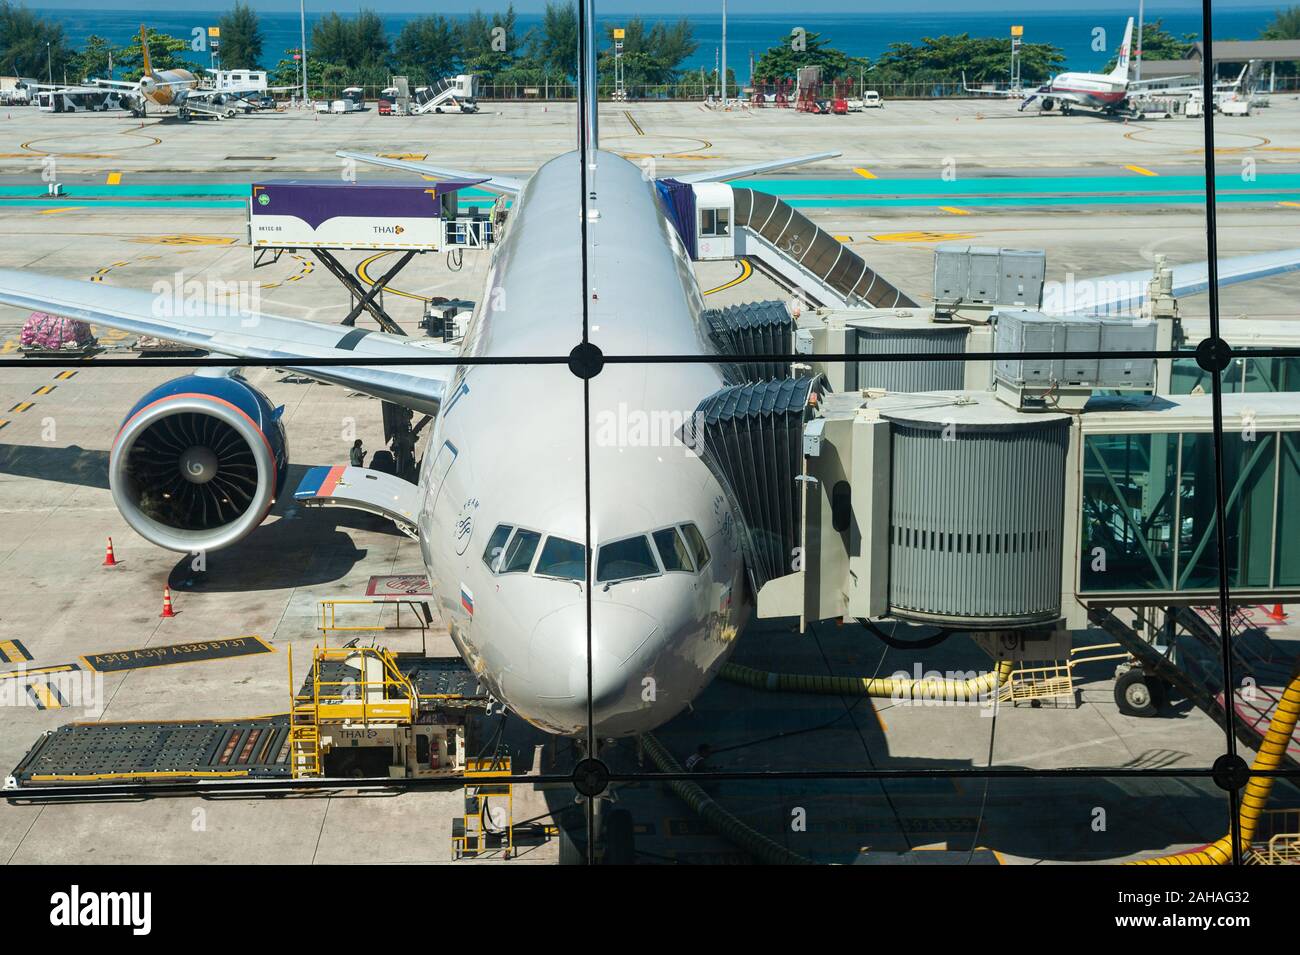 19.11.2019, Phuket, Thailand - Eine Aeroflot Russian Airlines Boeing 777-300Passagierflugzeug am internationalen Flughafen in Phuket. 0 SL 191119 D007CAROEX. Stockfoto